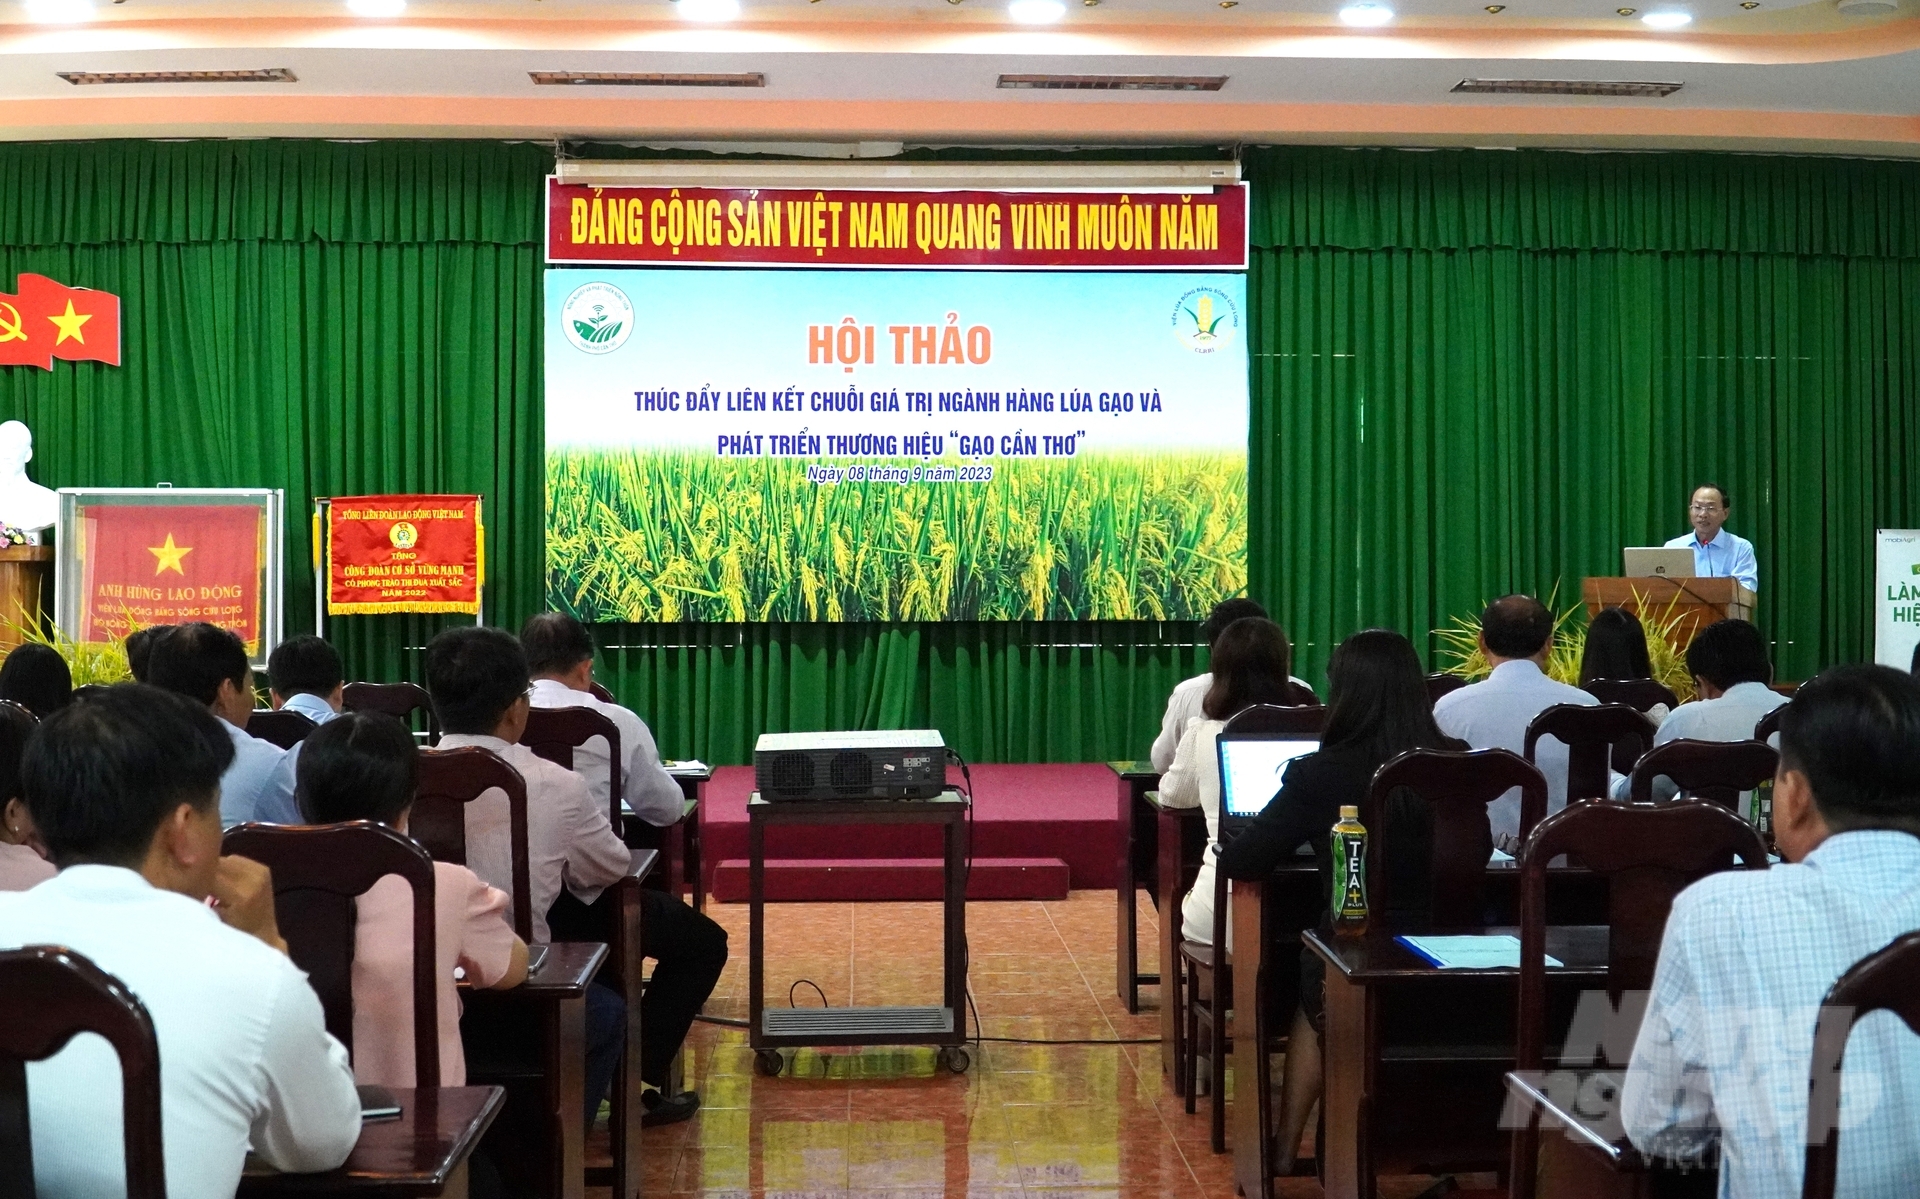 Hội thảo Thúc đẩy liên kết chuỗi giá trị ngành hàng lúa gạo và phát triển thương hiệu 'Gạo Cần Thơ'. Ảnh: Kim Anh.